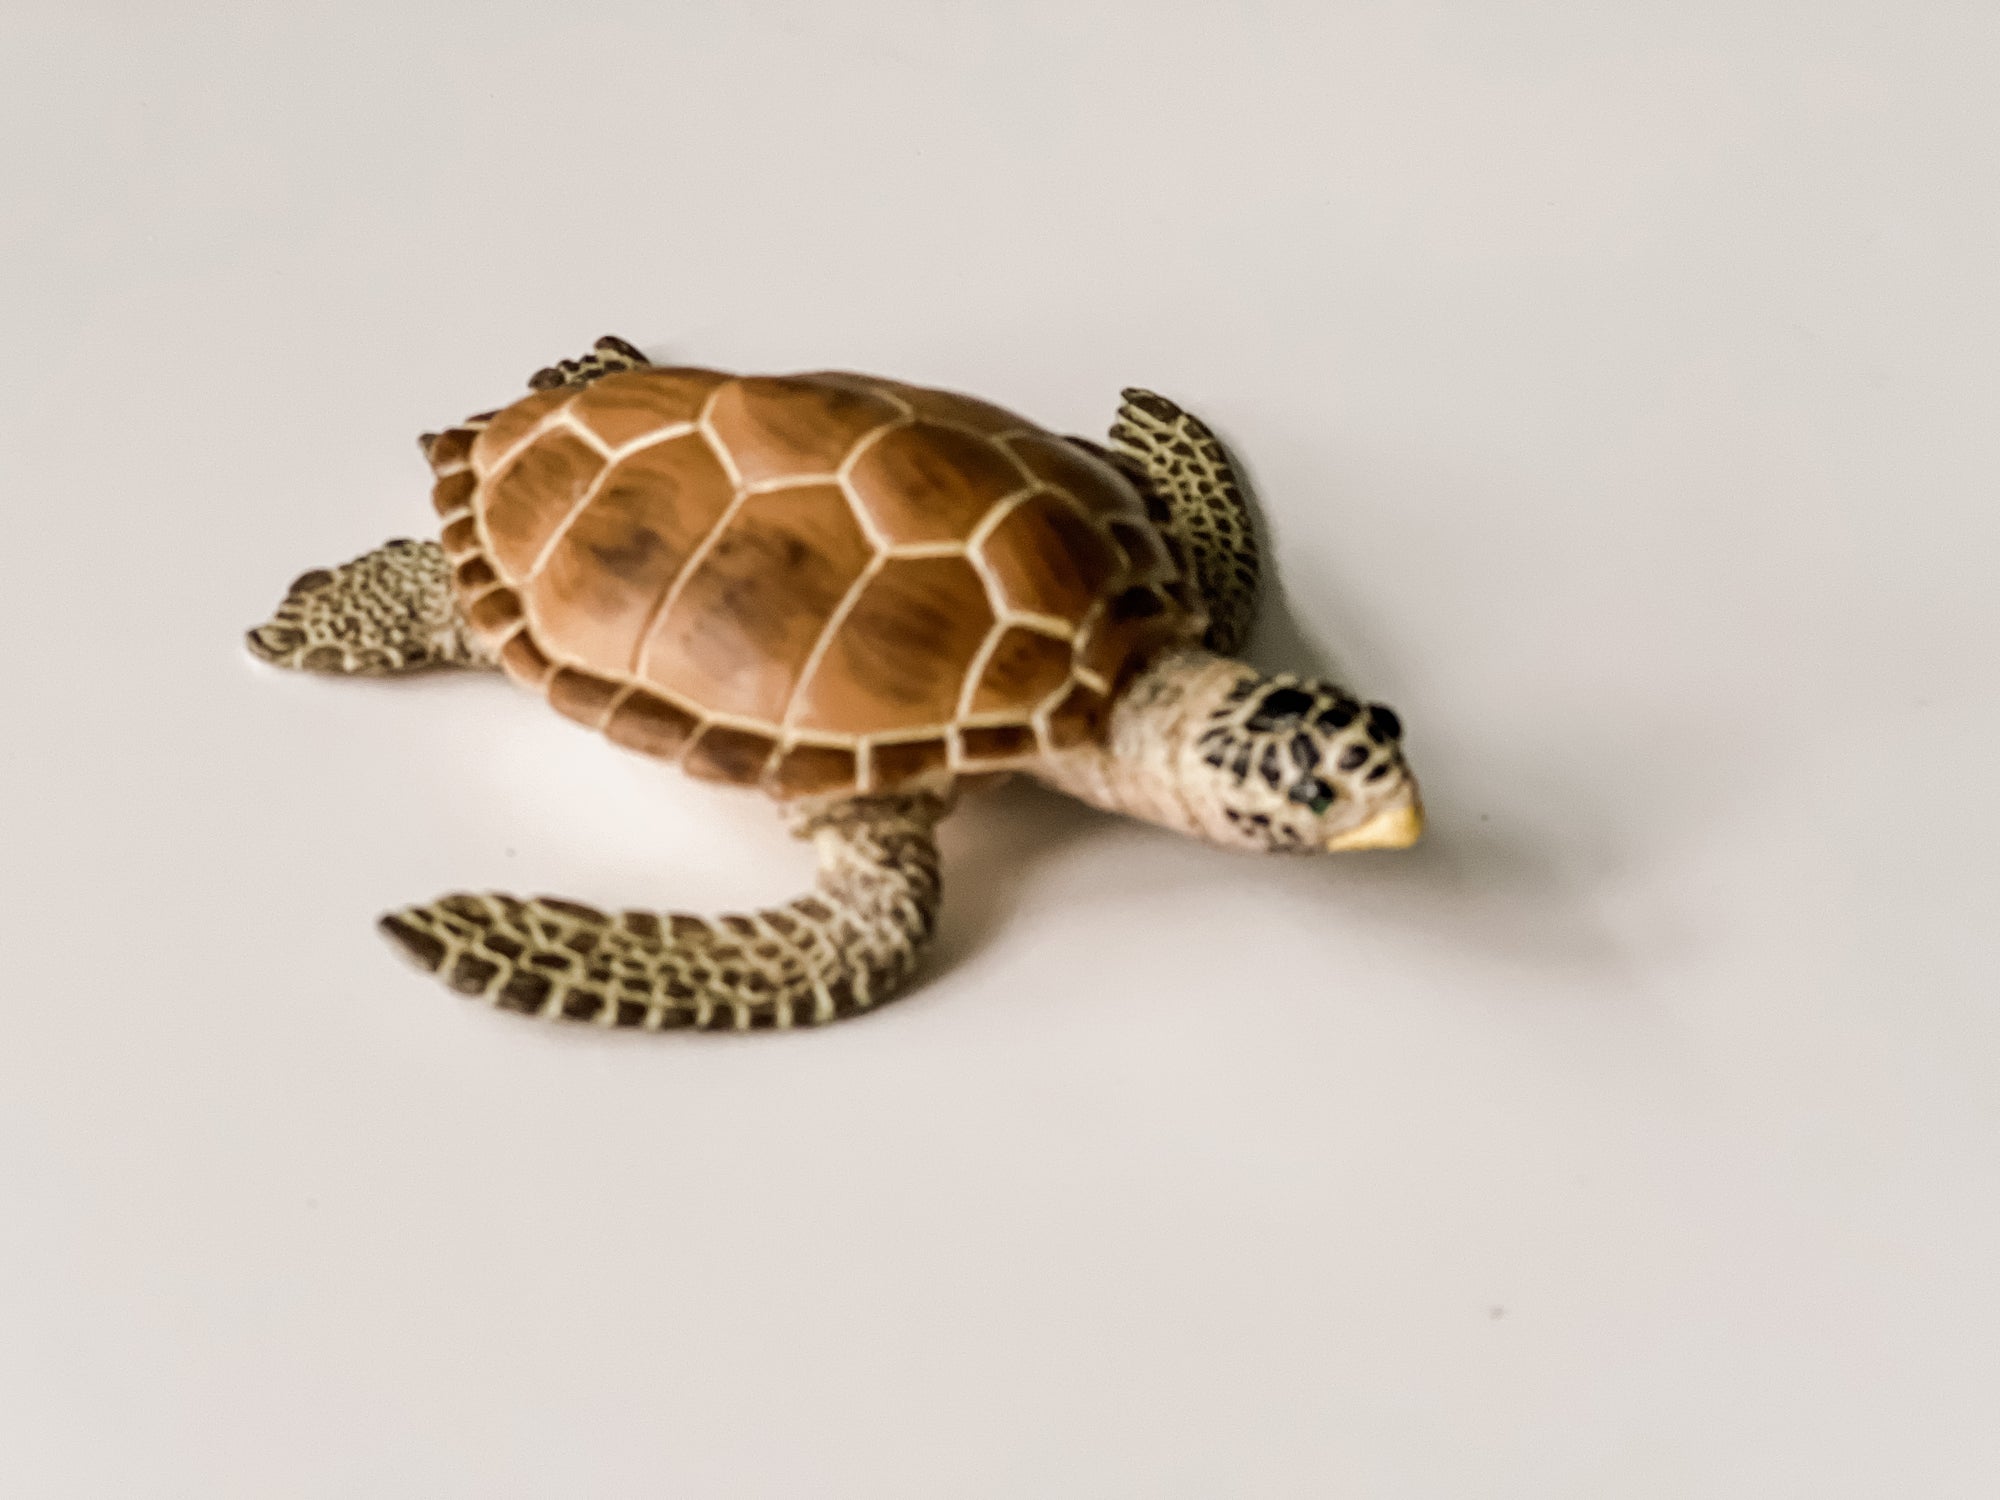 Loggerhead Turtle Figurine